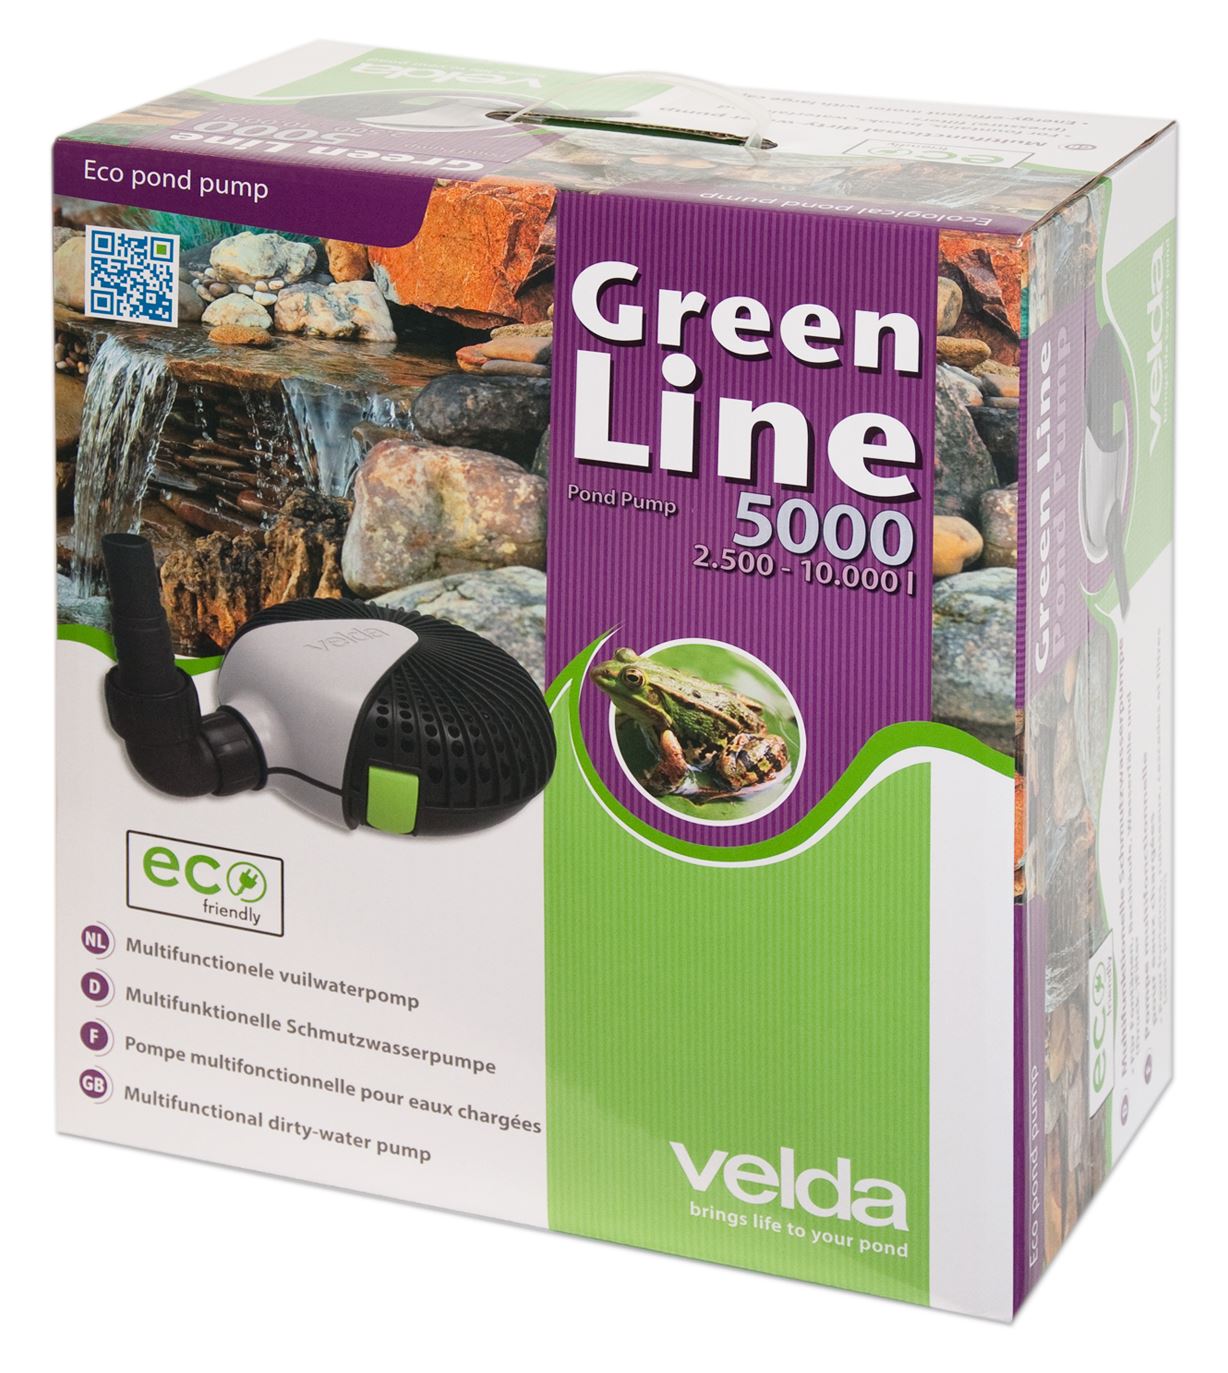 Green-Line-5000-energiezuinige-vijverpomp